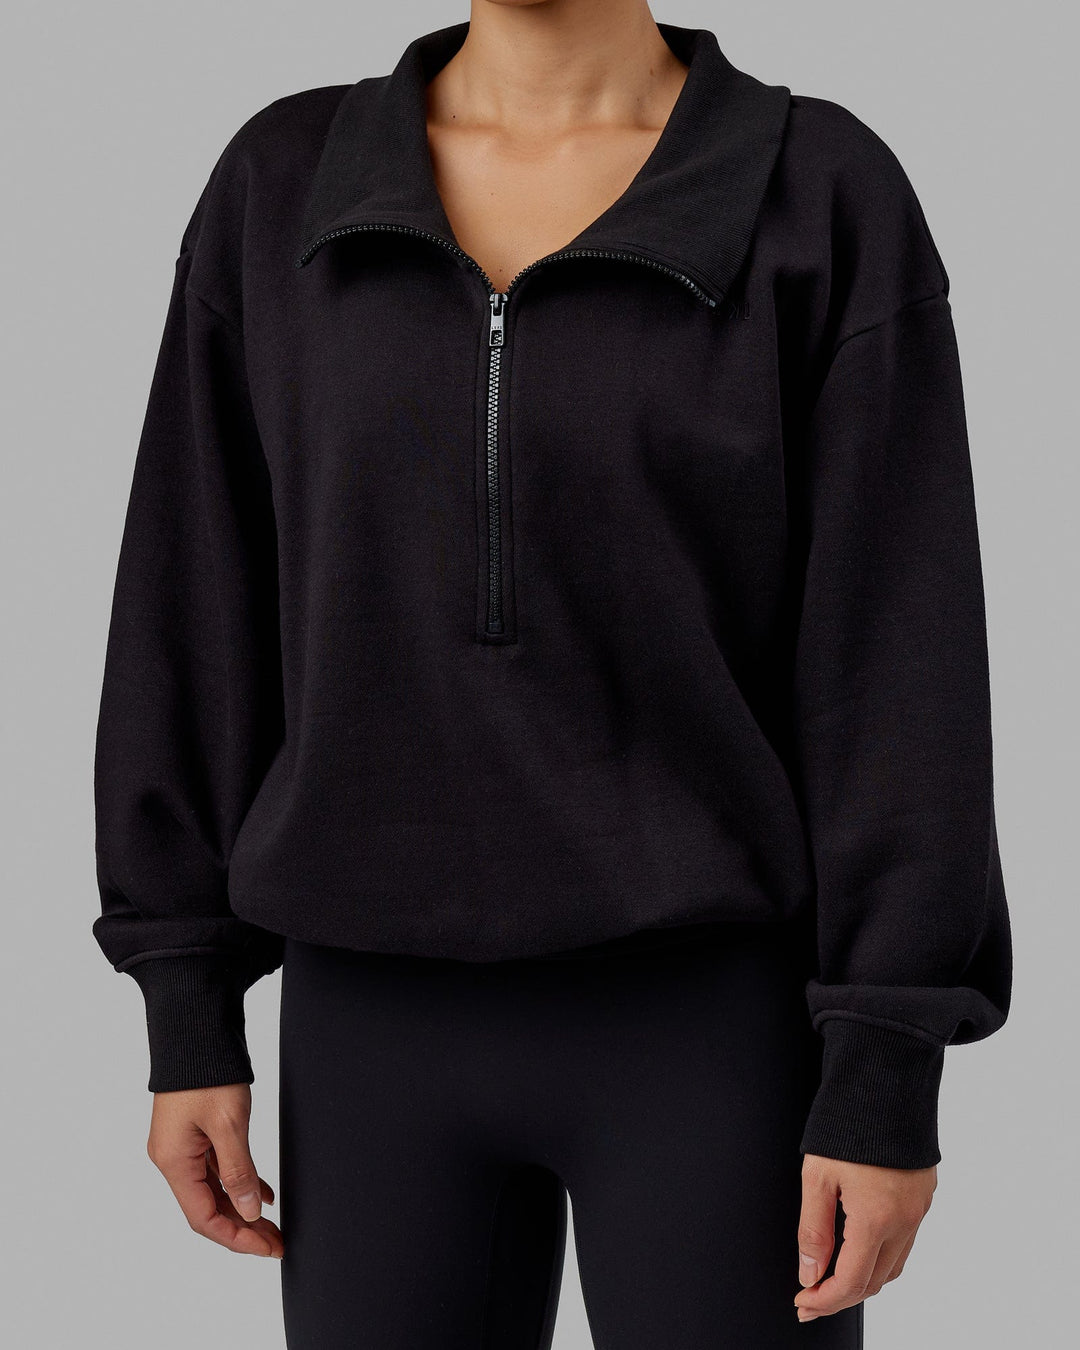 Woman wearing Wind Down FLXFleece 1/4 Zip Sweater - Black